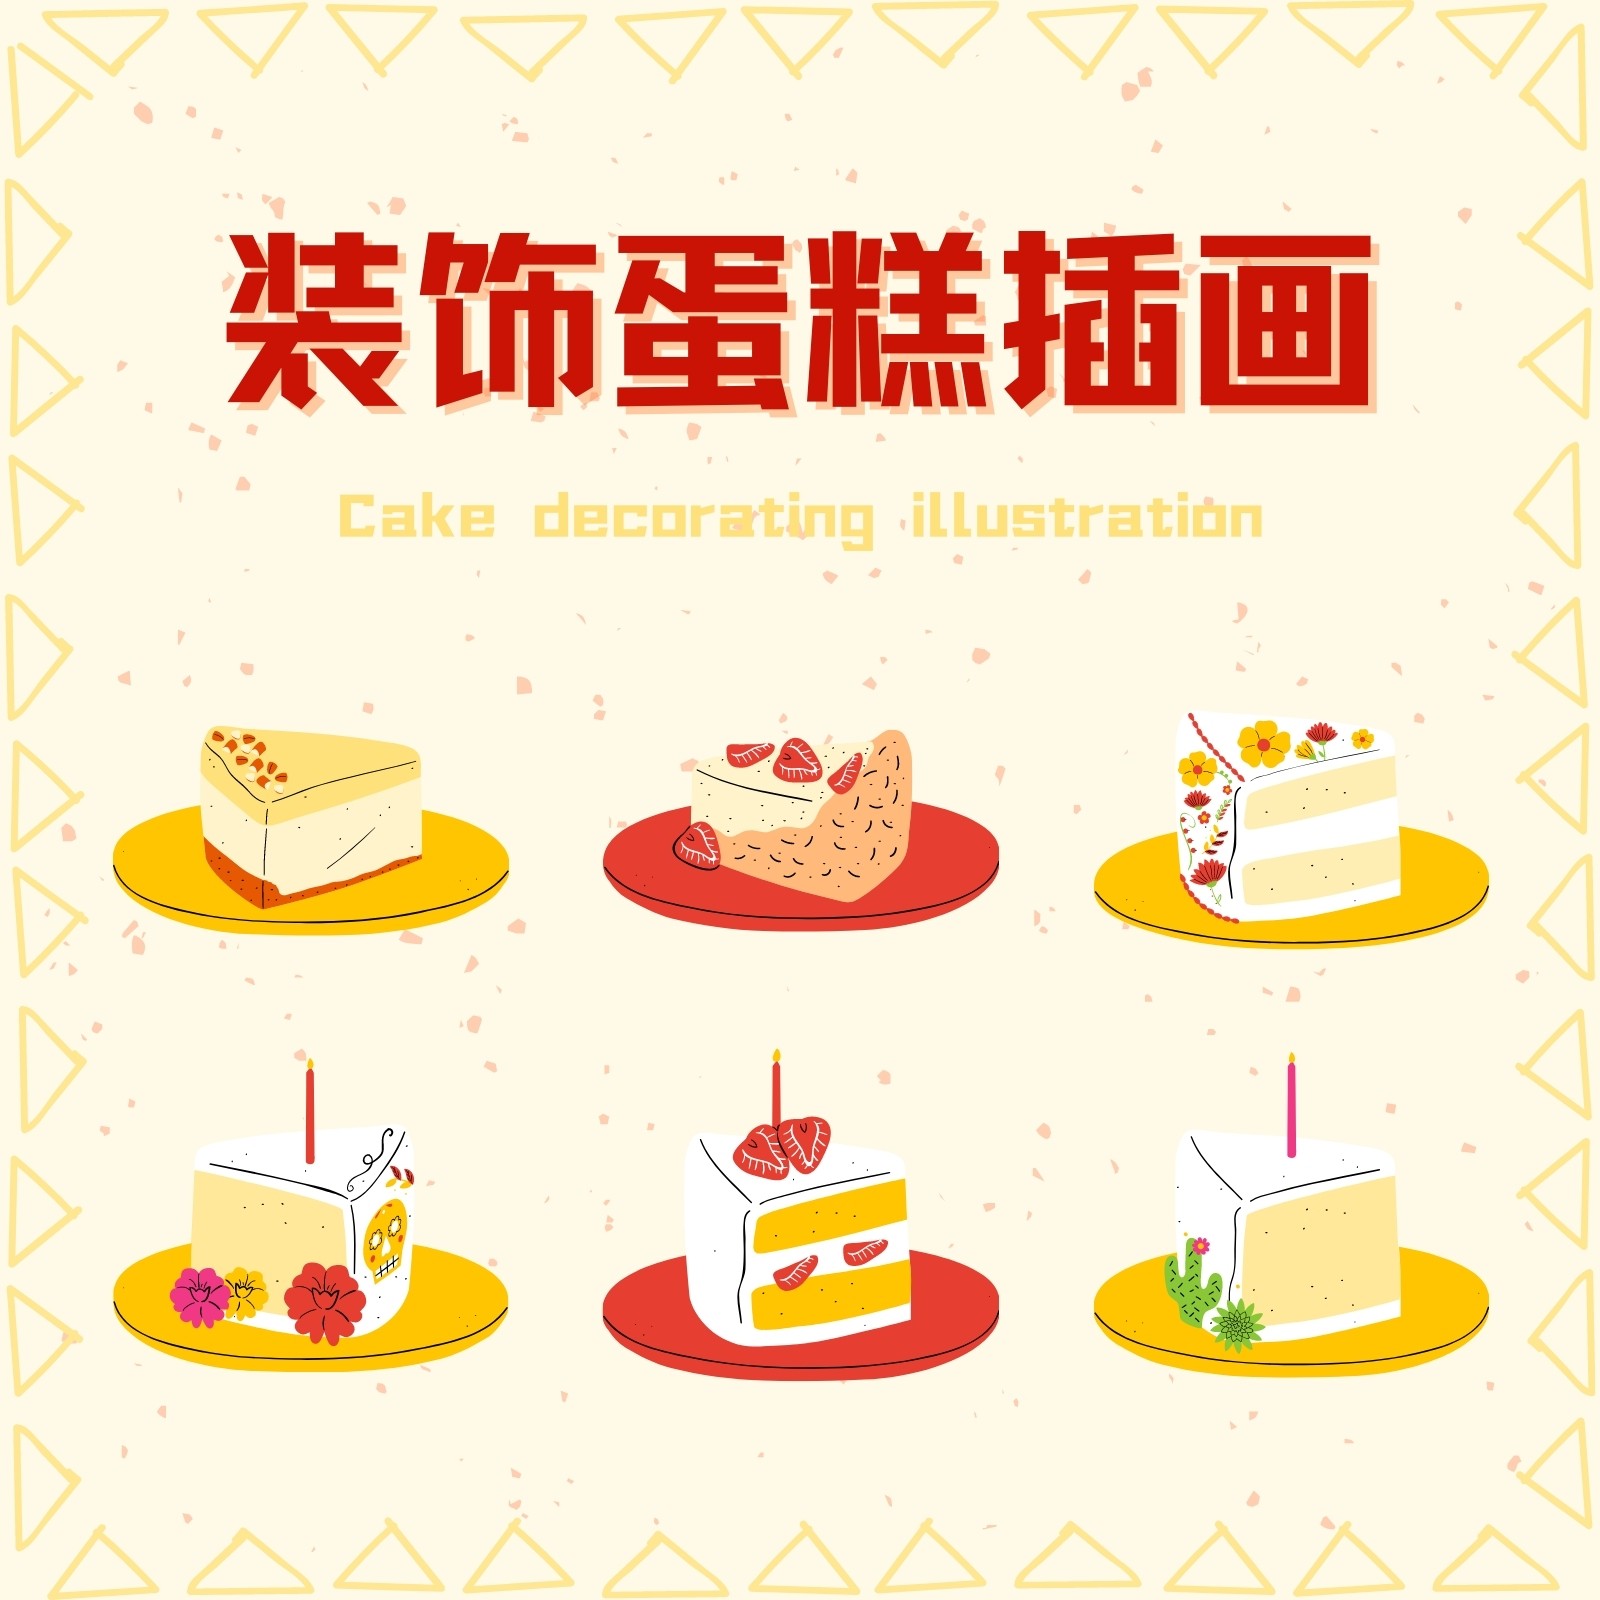 花纹装饰蛋糕插画元素 - 模板 - Canva可画